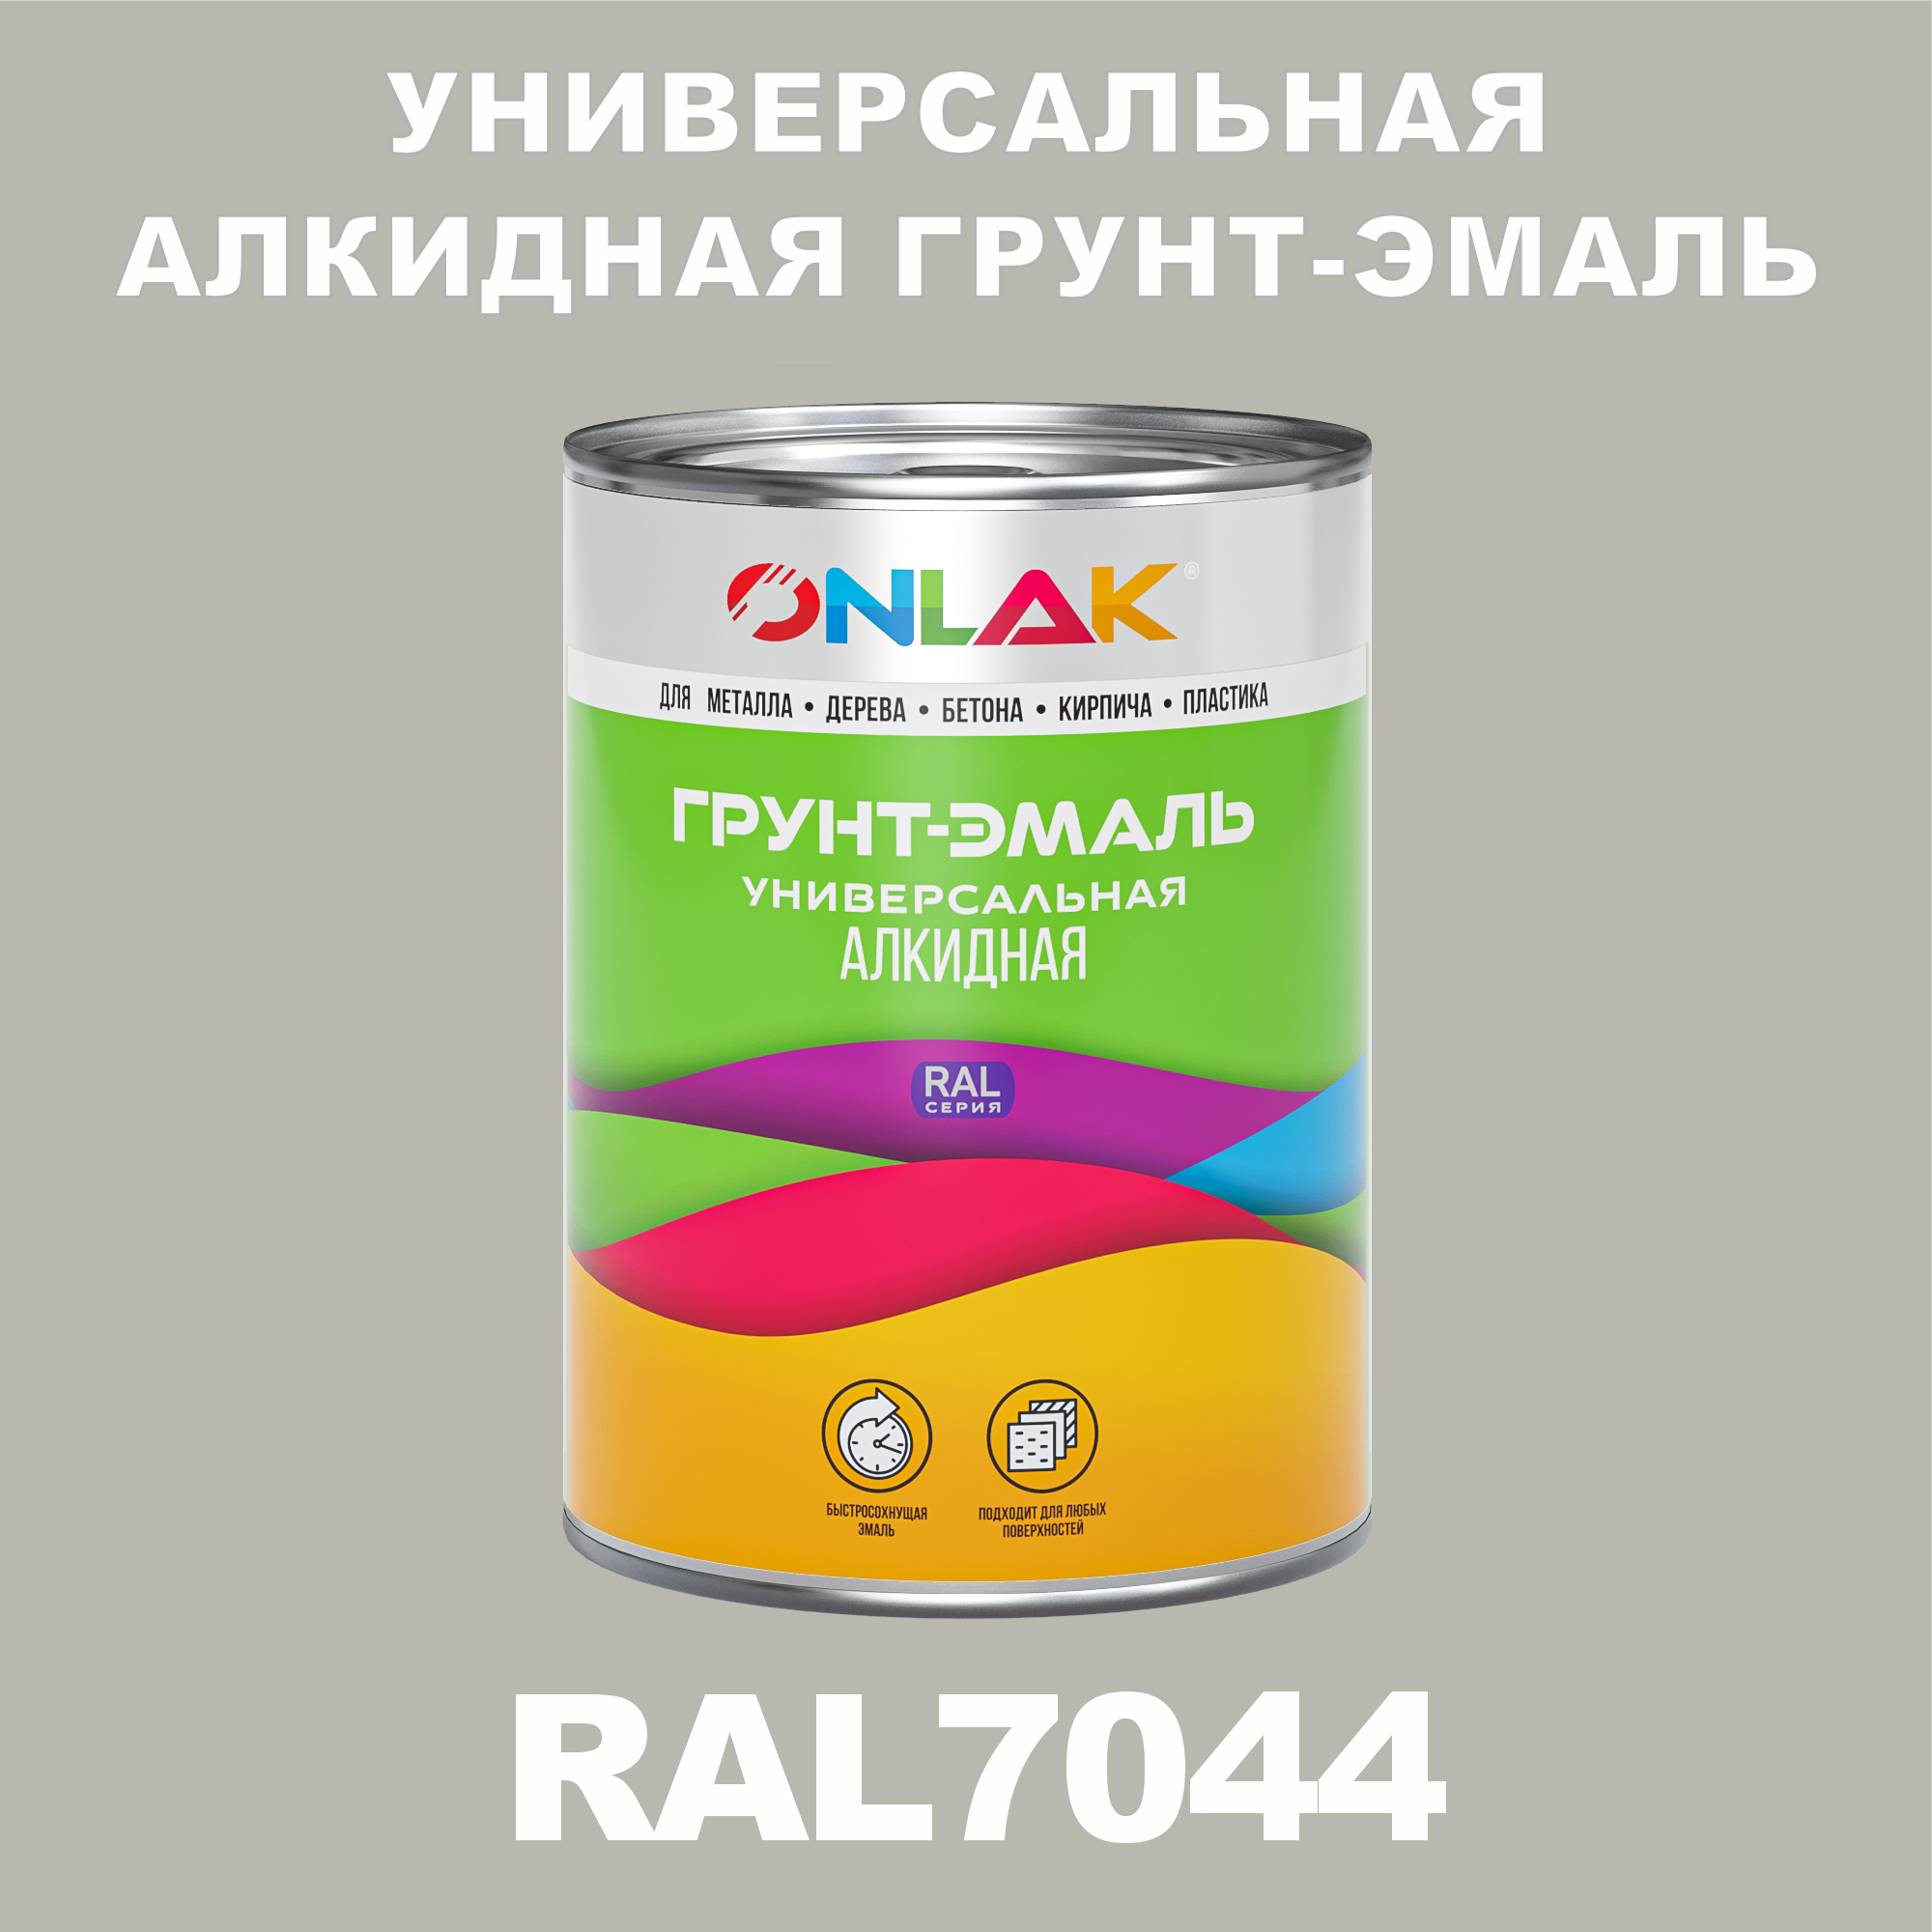 Грунт-эмаль ONLAK 1К RAL7044 антикоррозионная алкидная по металлу по ржавчине 1 кг грунт эмаль yollo по ржавчине алкидная серая 0 9 кг